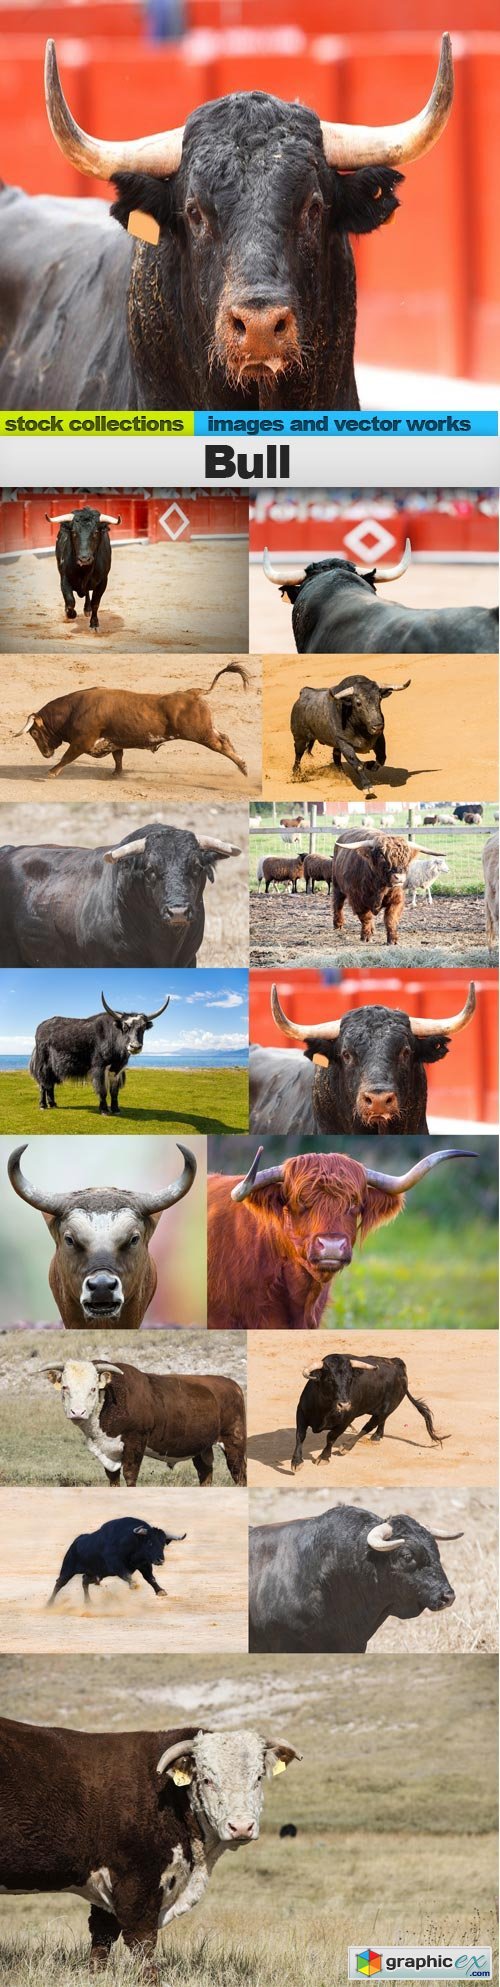 Bull, 15 x UHQ JPEG